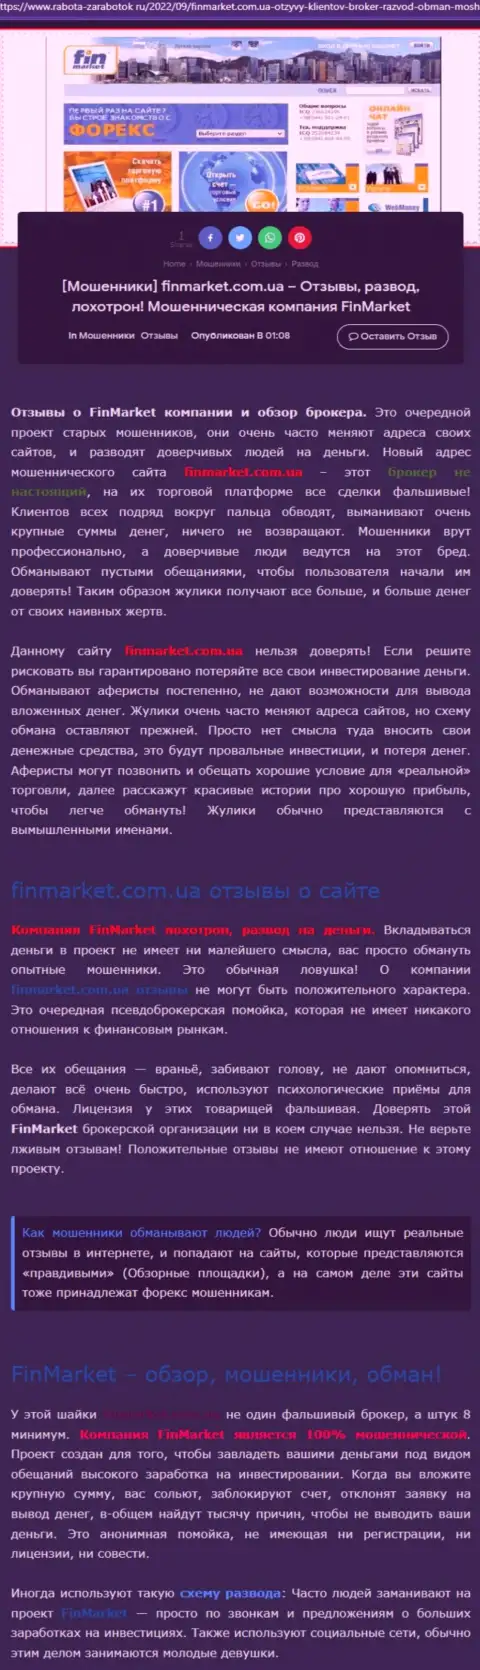 Анализ деяний конторы ООО ФИНМАРКЕТ - обувают грубо (обзор манипуляций)